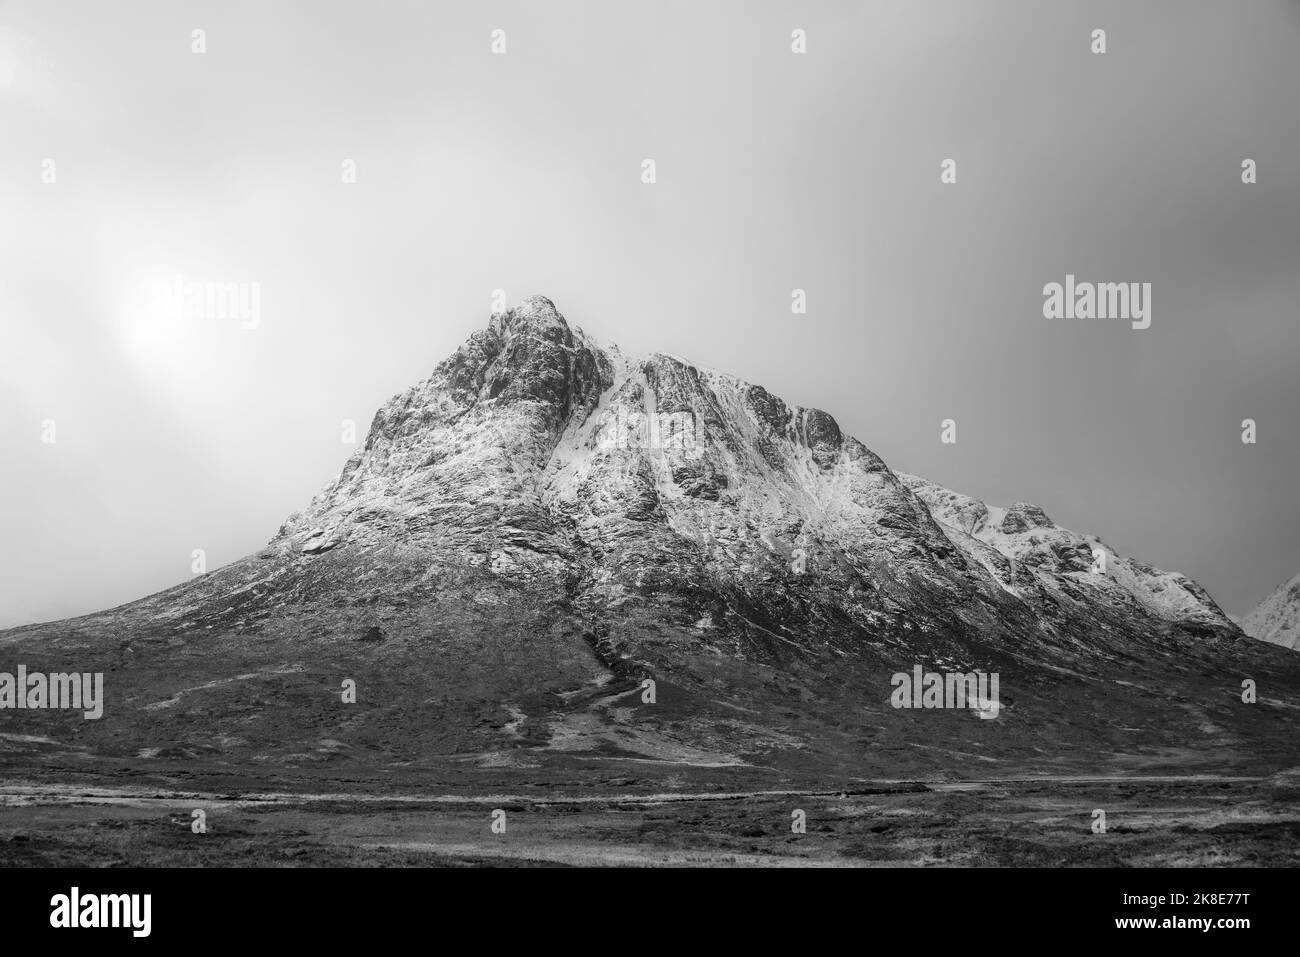 Paysage spectaculaire en noir et blanc image d'hiver de la légendaire montagne Sob Dearg Buachaville Etive Mor dans les Highlands écossais Banque D'Images